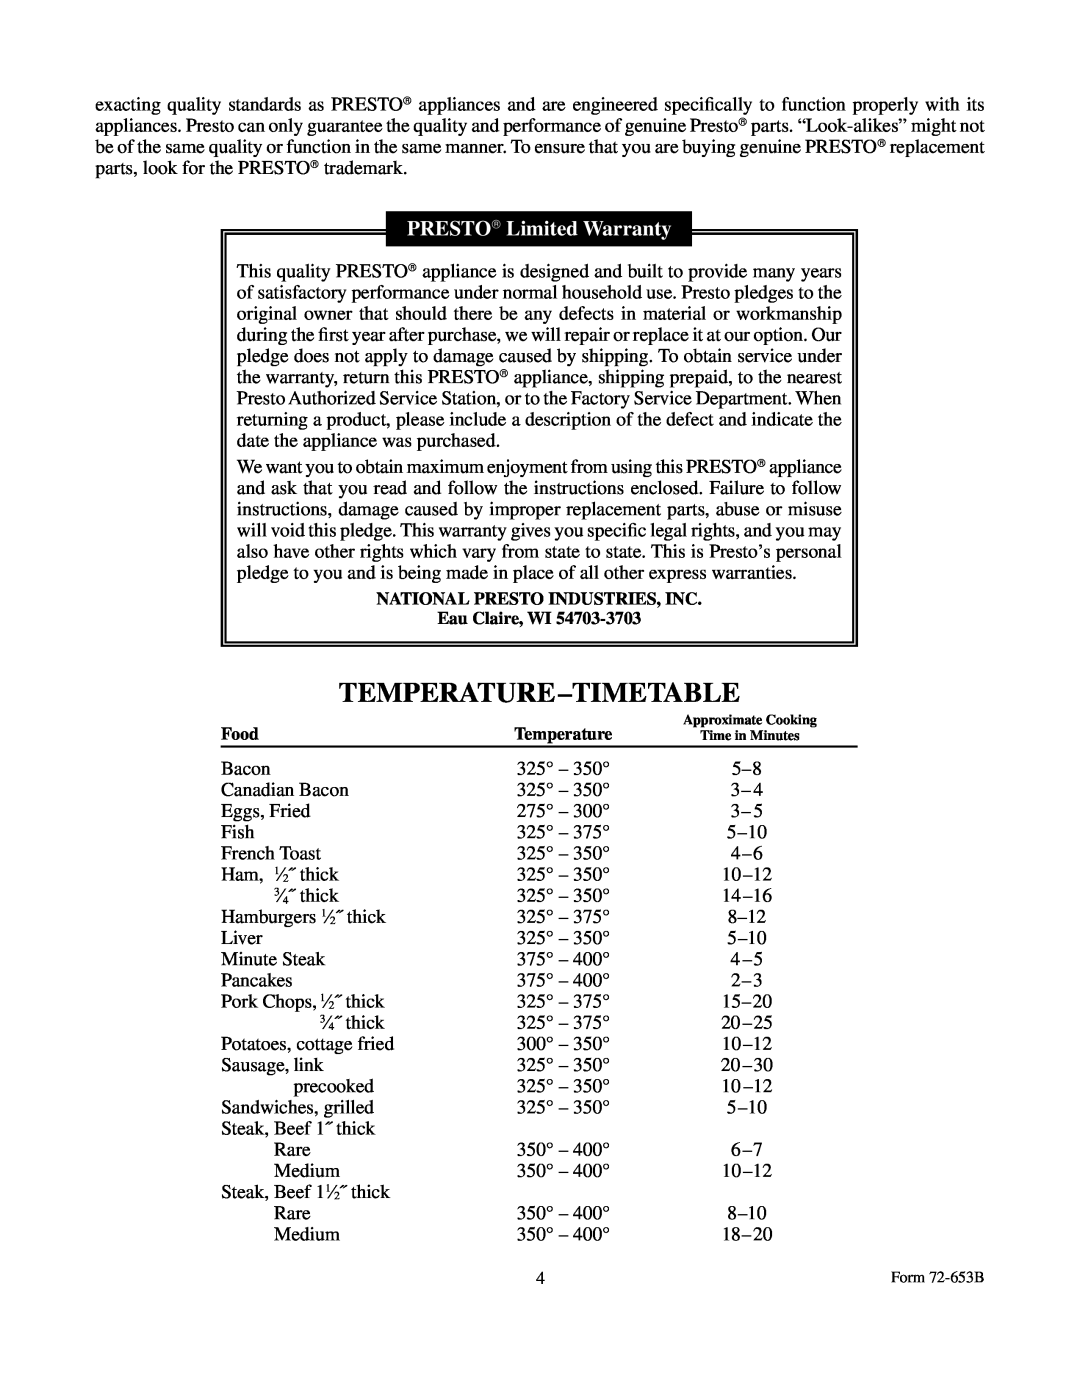 Presto BigGriddle cooltouchgriddle manual Temperature-Timetable, PRESTO Limited Warranty 